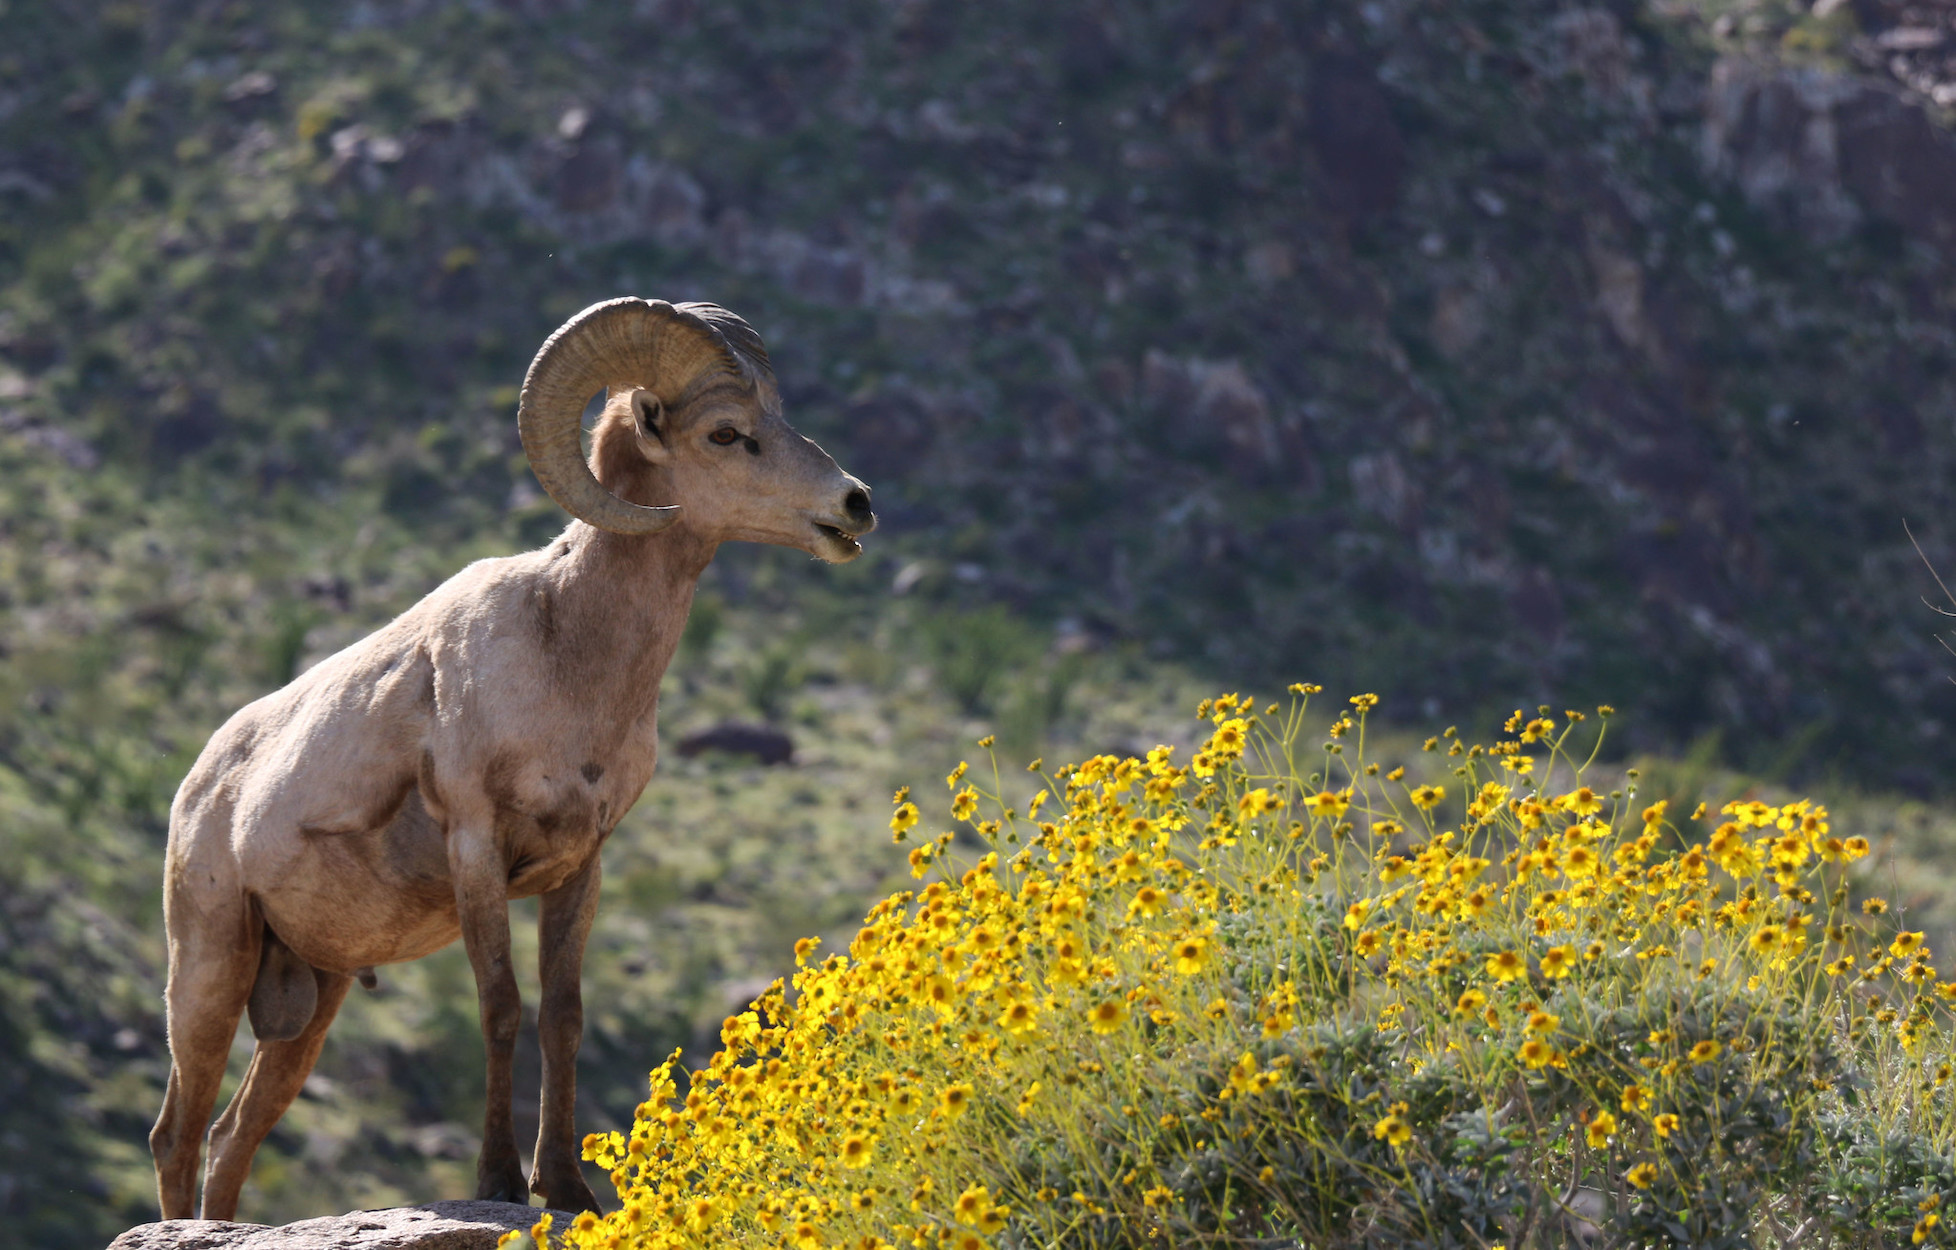 A desert bighorn sheep near a patch of wildflowers.